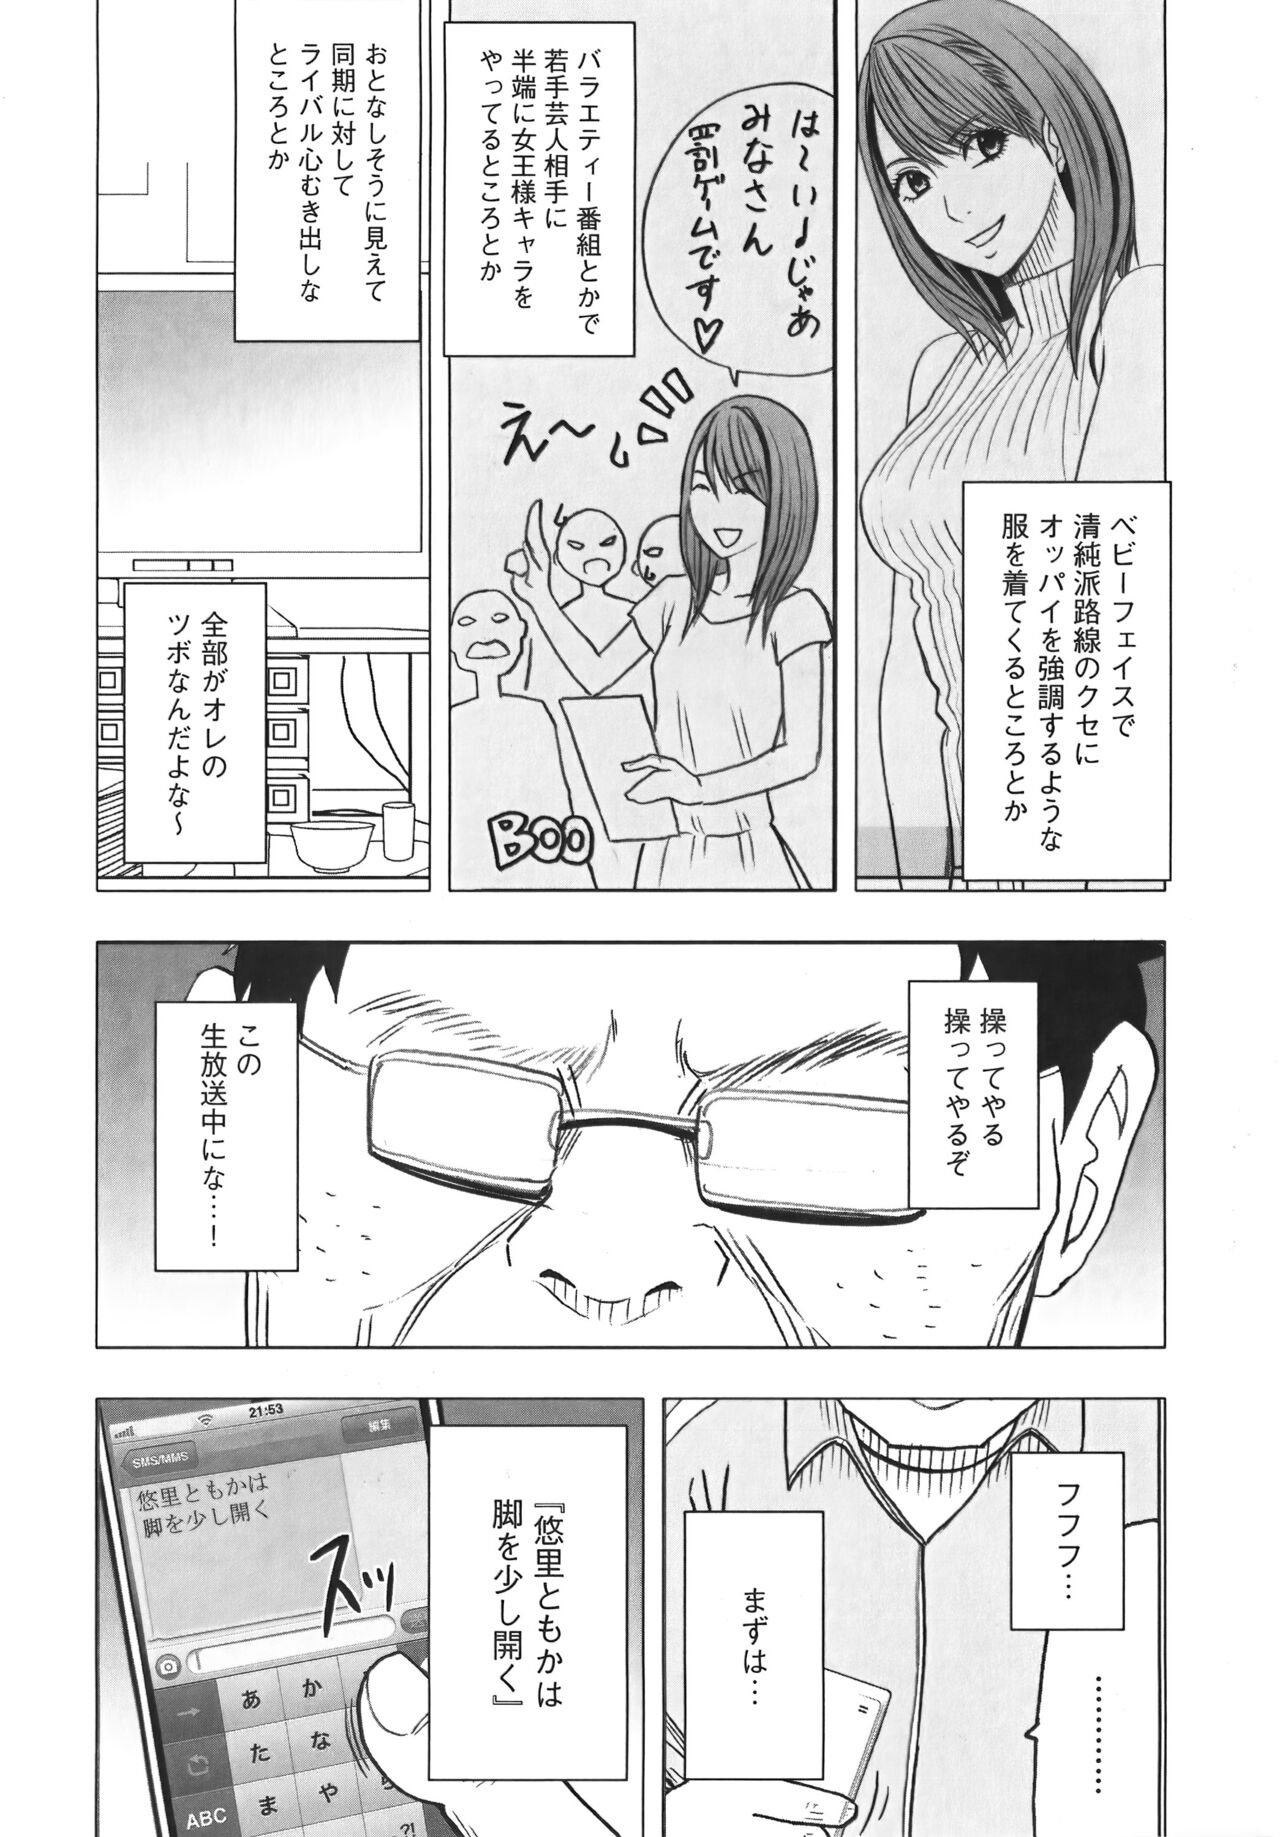 [Crimson] Idol Kyousei Sousa Vol.1 Smartphone de Meireishita Koto ga Genjitsu ni [Complete Edition] 93